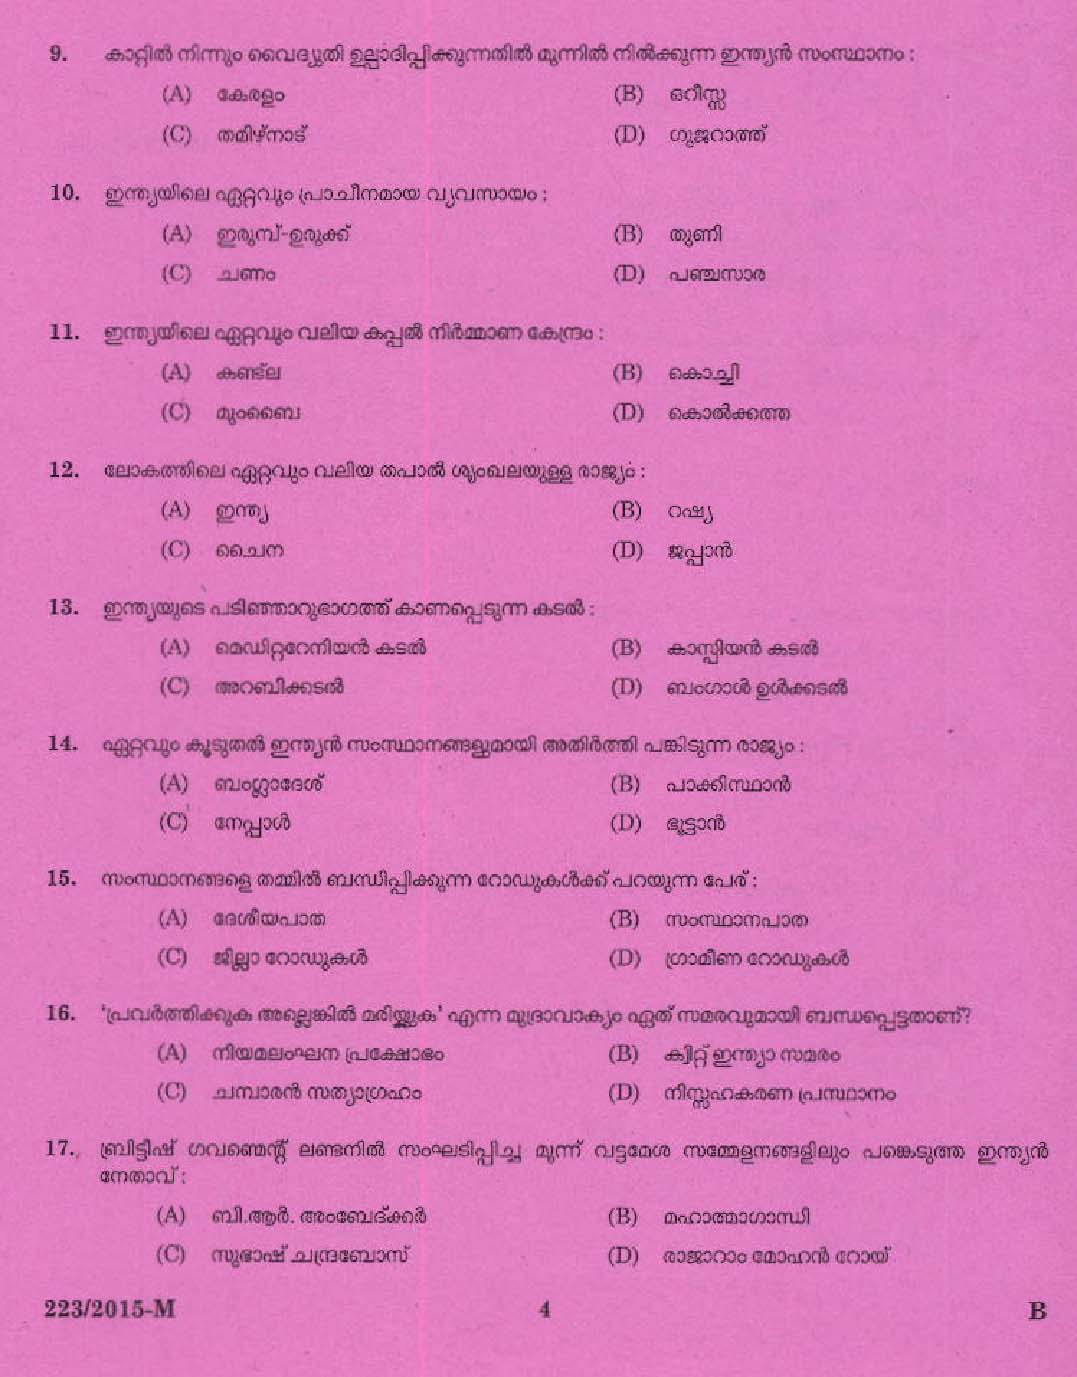 Kerala PSC Boat Driver Exam 2015 Question Paper Code 2232015 M 2